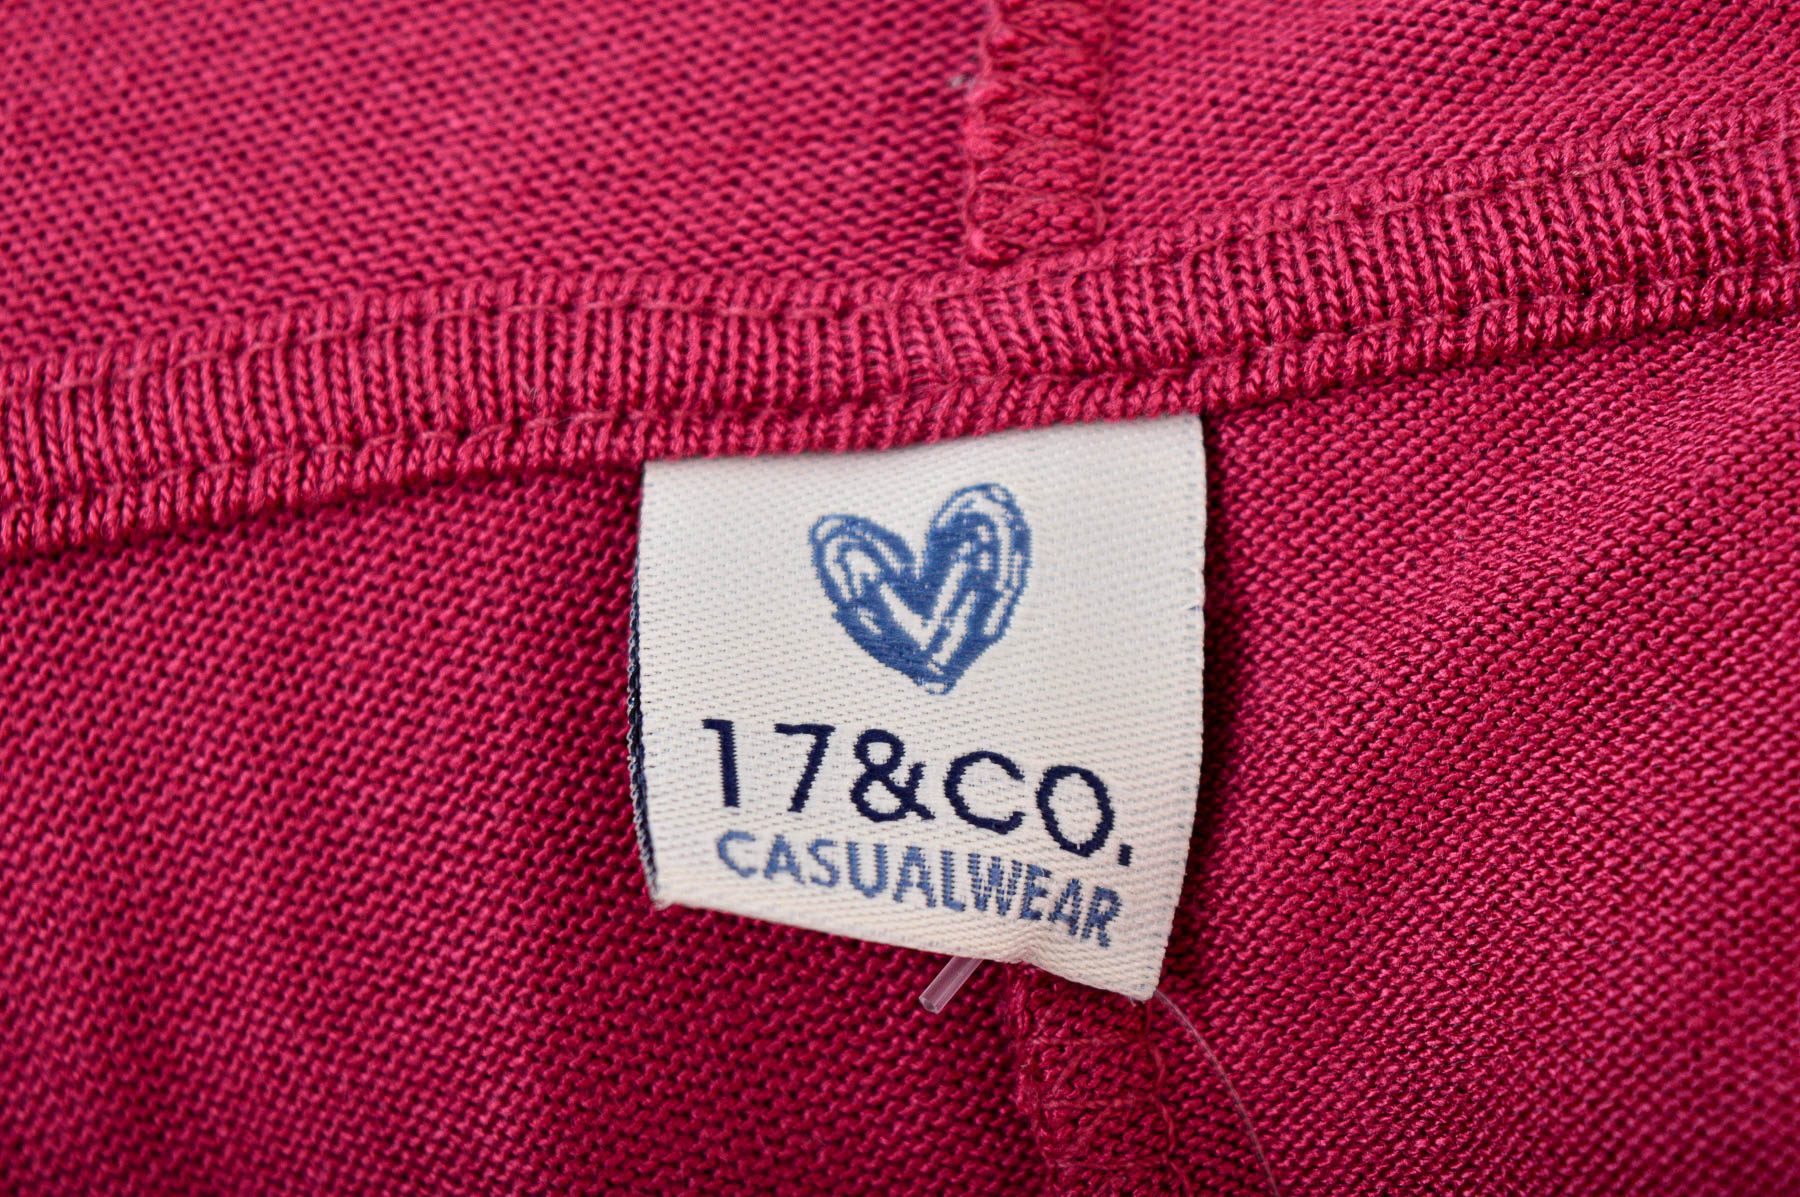 Cardigan / Jachetă de damă - 17 & Co - 2